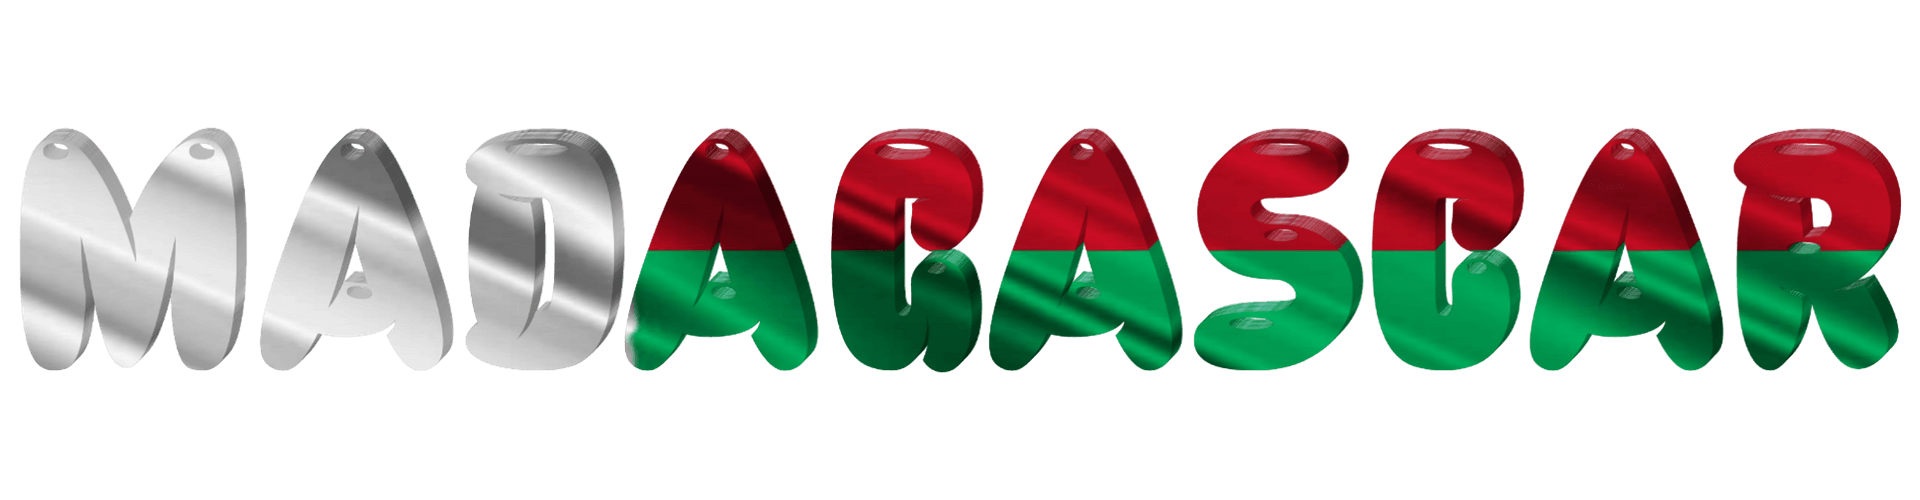 Madagascar Flag PNG Photo Image